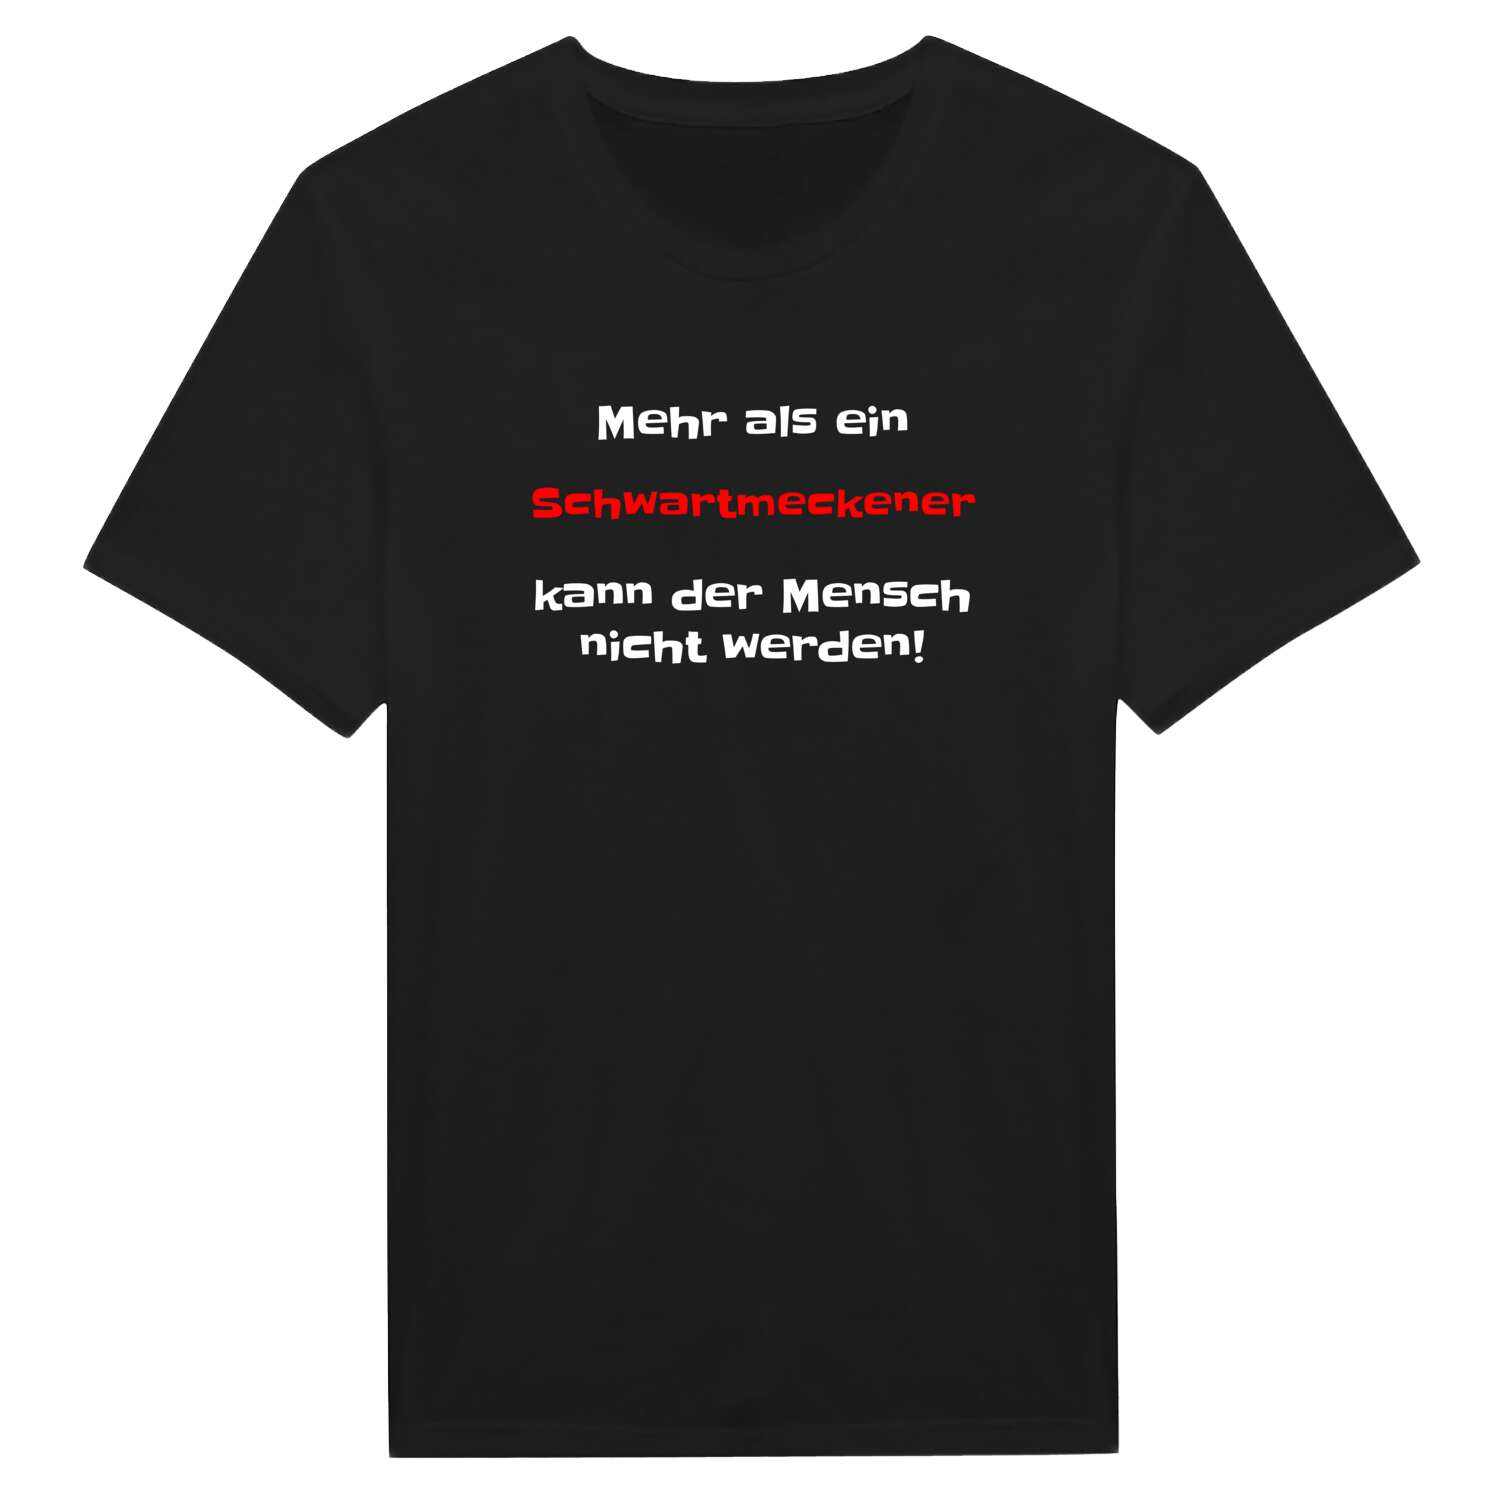 Schwartmecke T-Shirt »Mehr als ein«